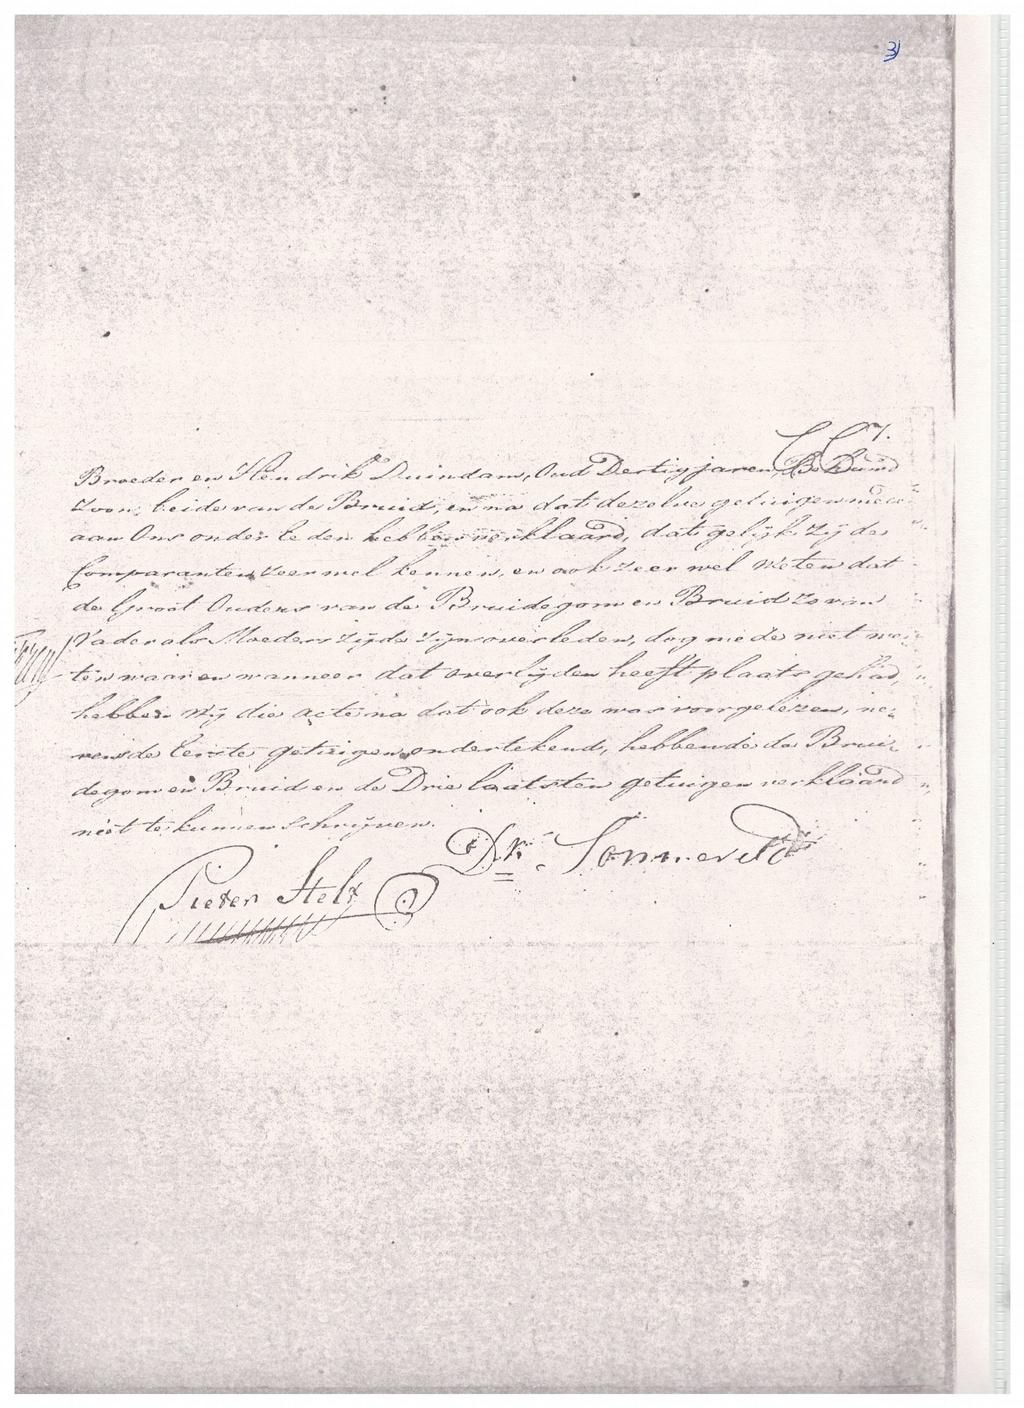 25 februari 1816 Huwelijks akte van Antje de Goede en Martinus van Woerden te Beverwijk met handtekening van Pieter Stelt en getuige D. Zonneveld.